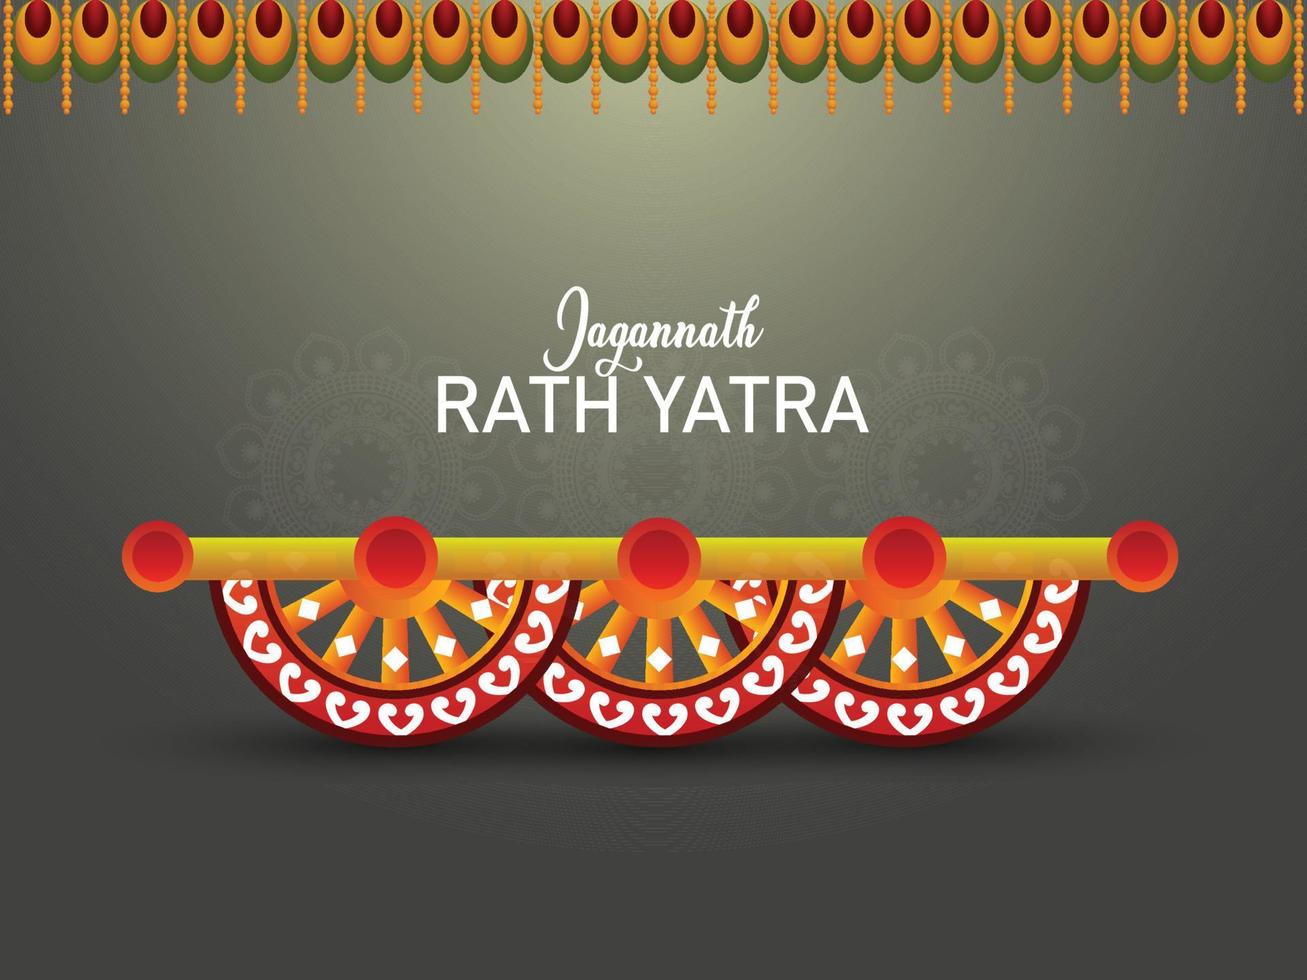 schöner wagen für glückliches rath yatra mit lord jagannath balabhadra und subhadra-vektorillustration vektor